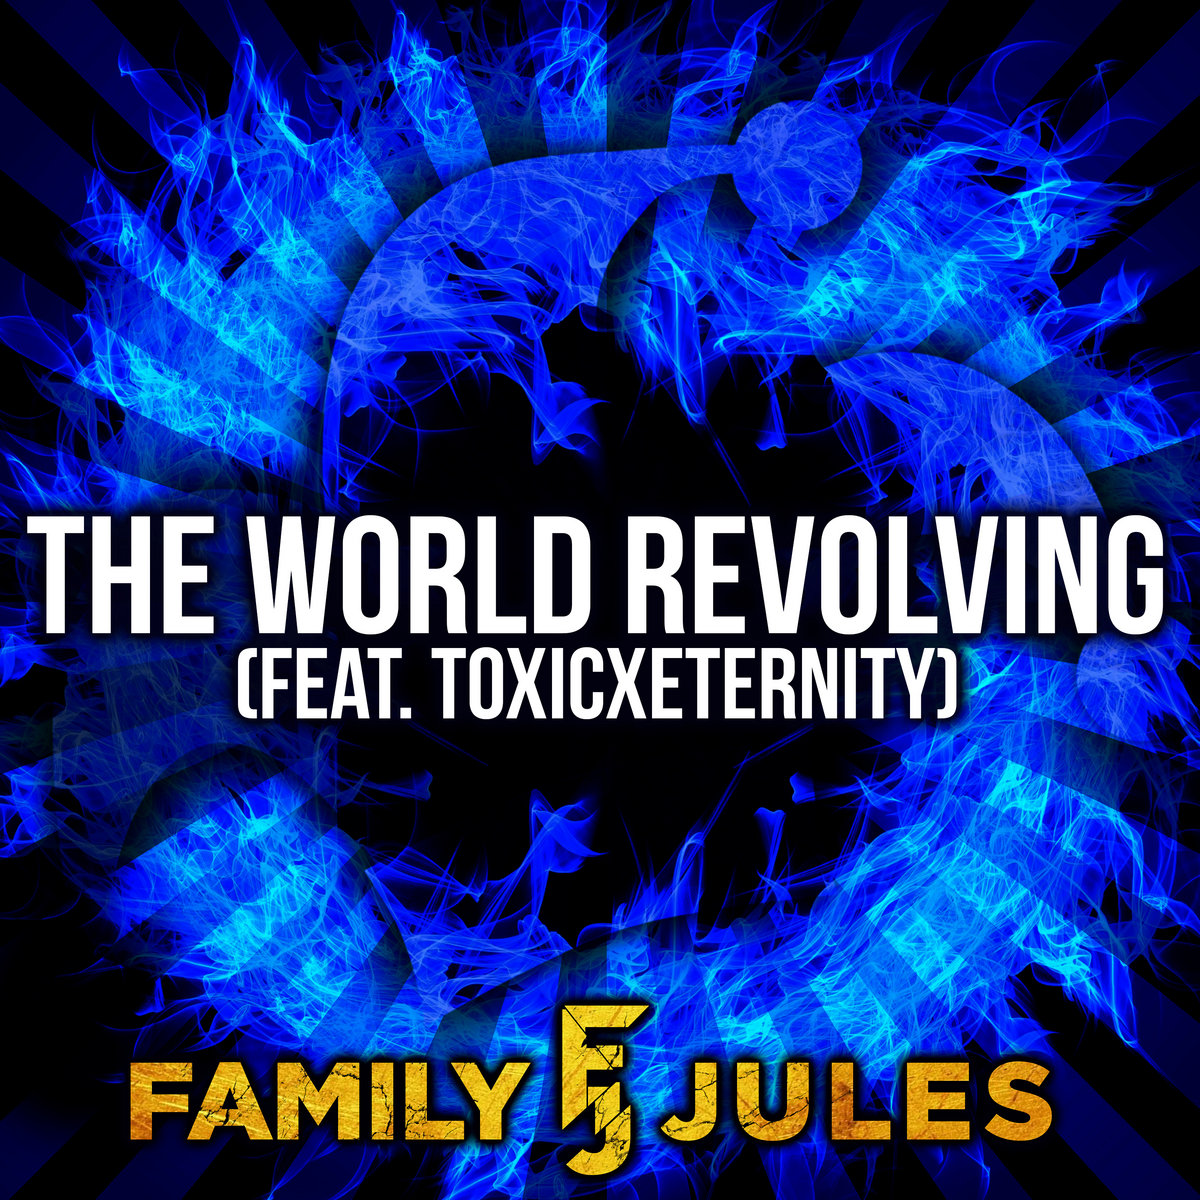 The World Revolving (from "DELTARUNE") | FamilyJules